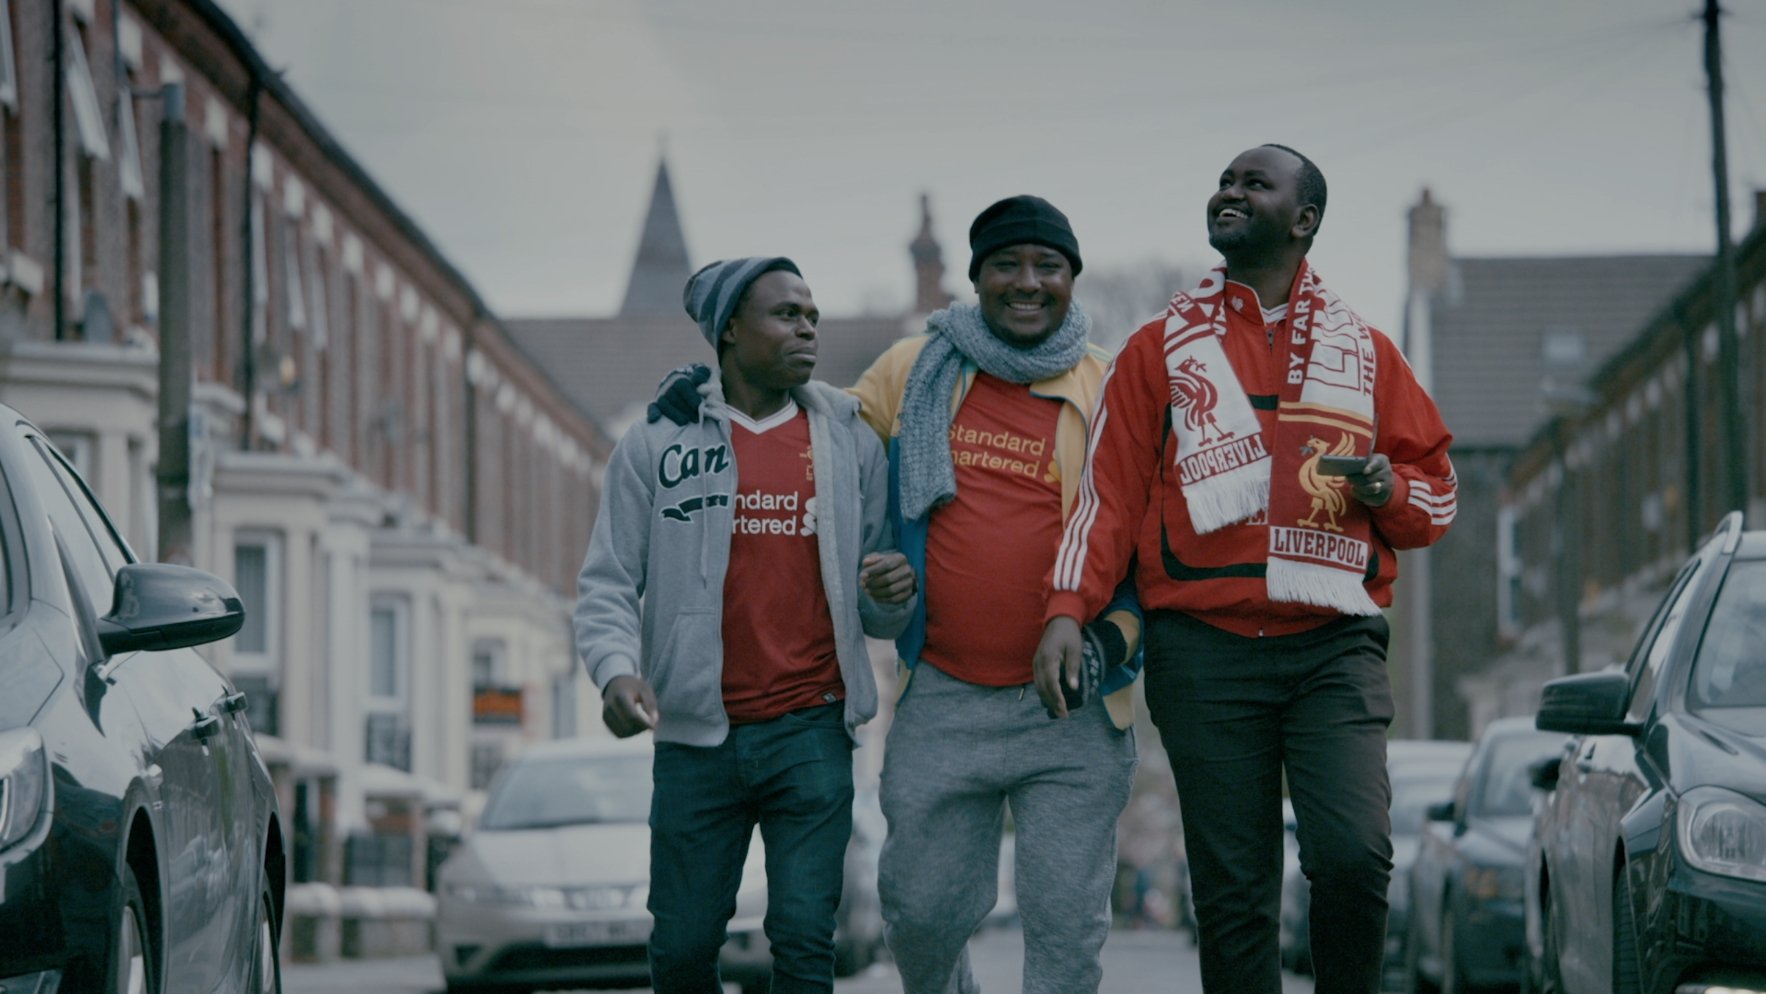 'This is football': John Carlin lanza una serie documental sobre las bondades del fútbol